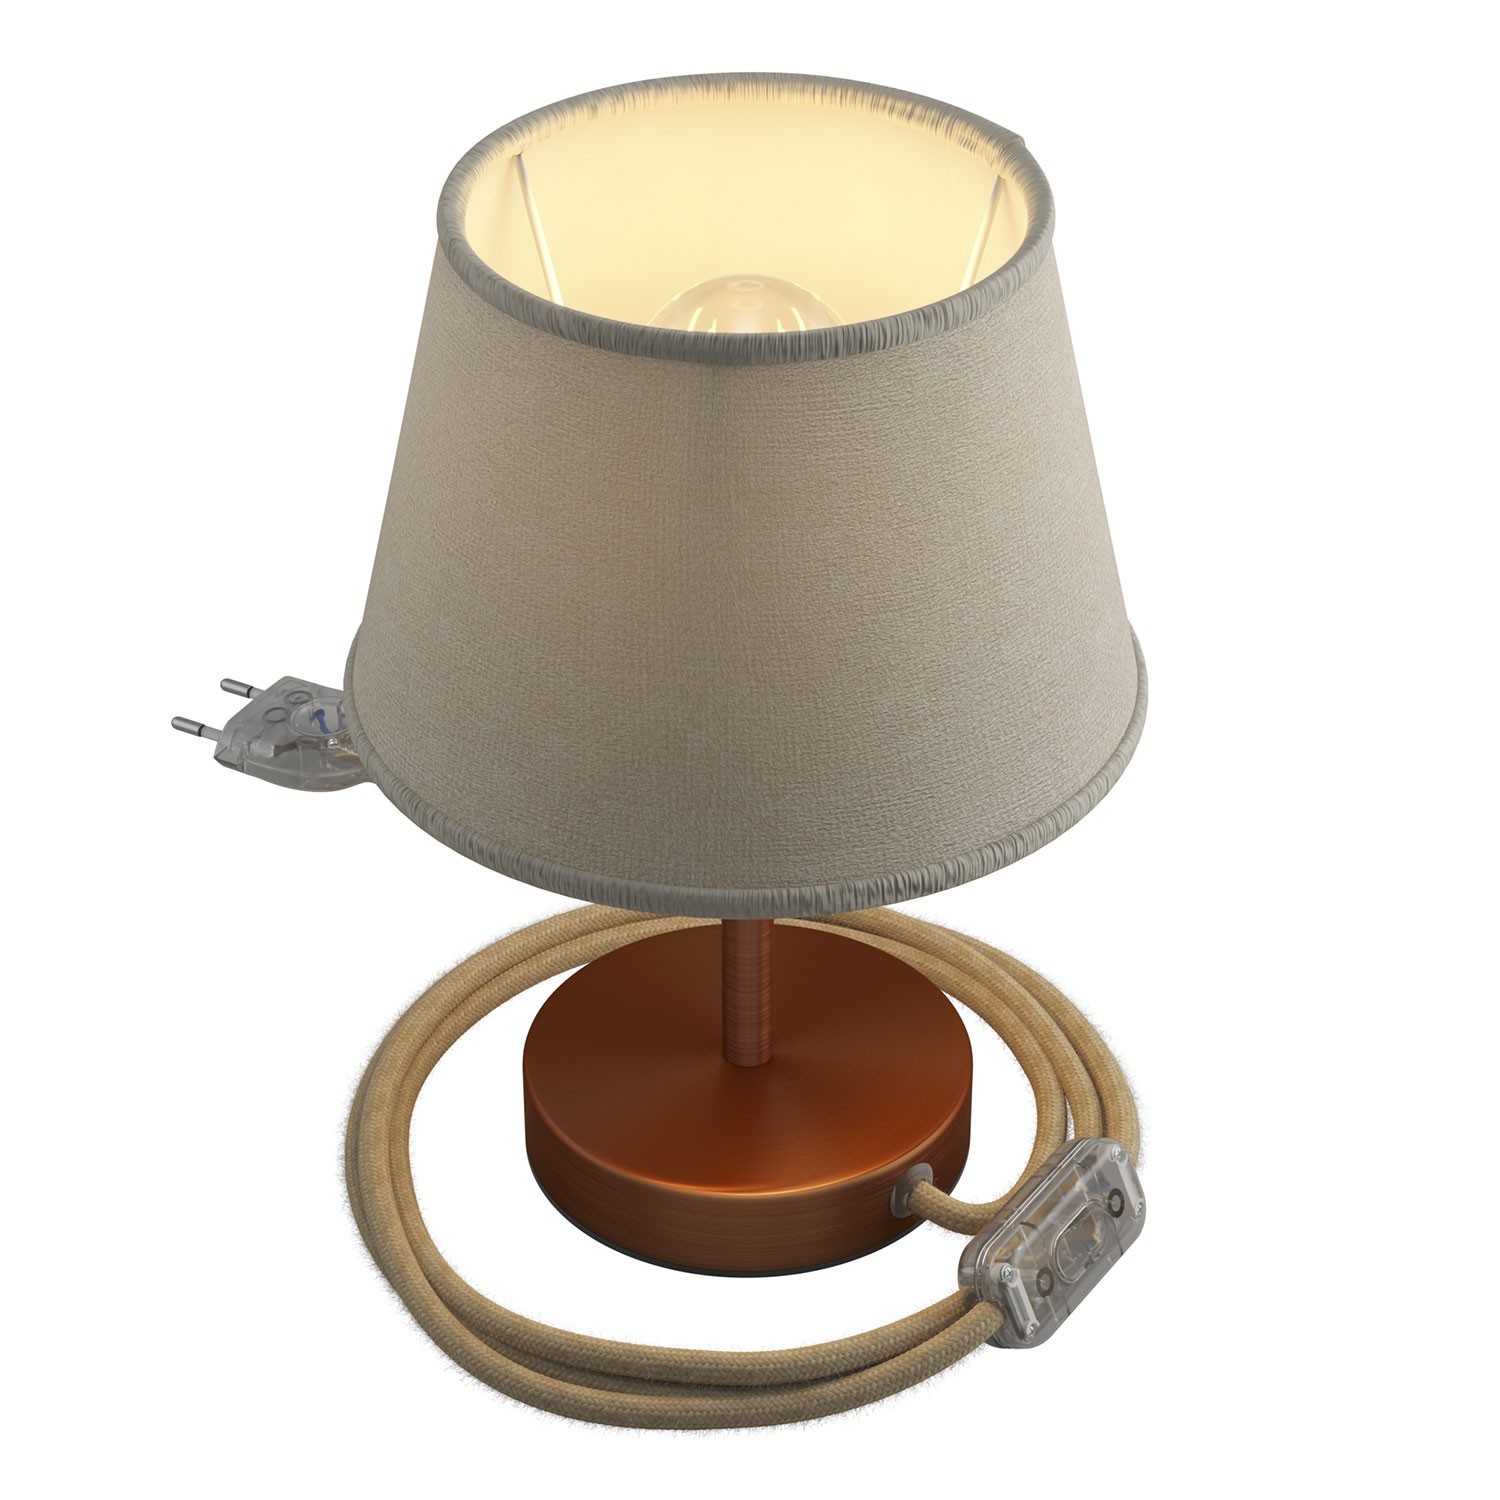 Alzaluce med Impero lampeskærm, bordlampe i metal med stik, kabel og afbryder